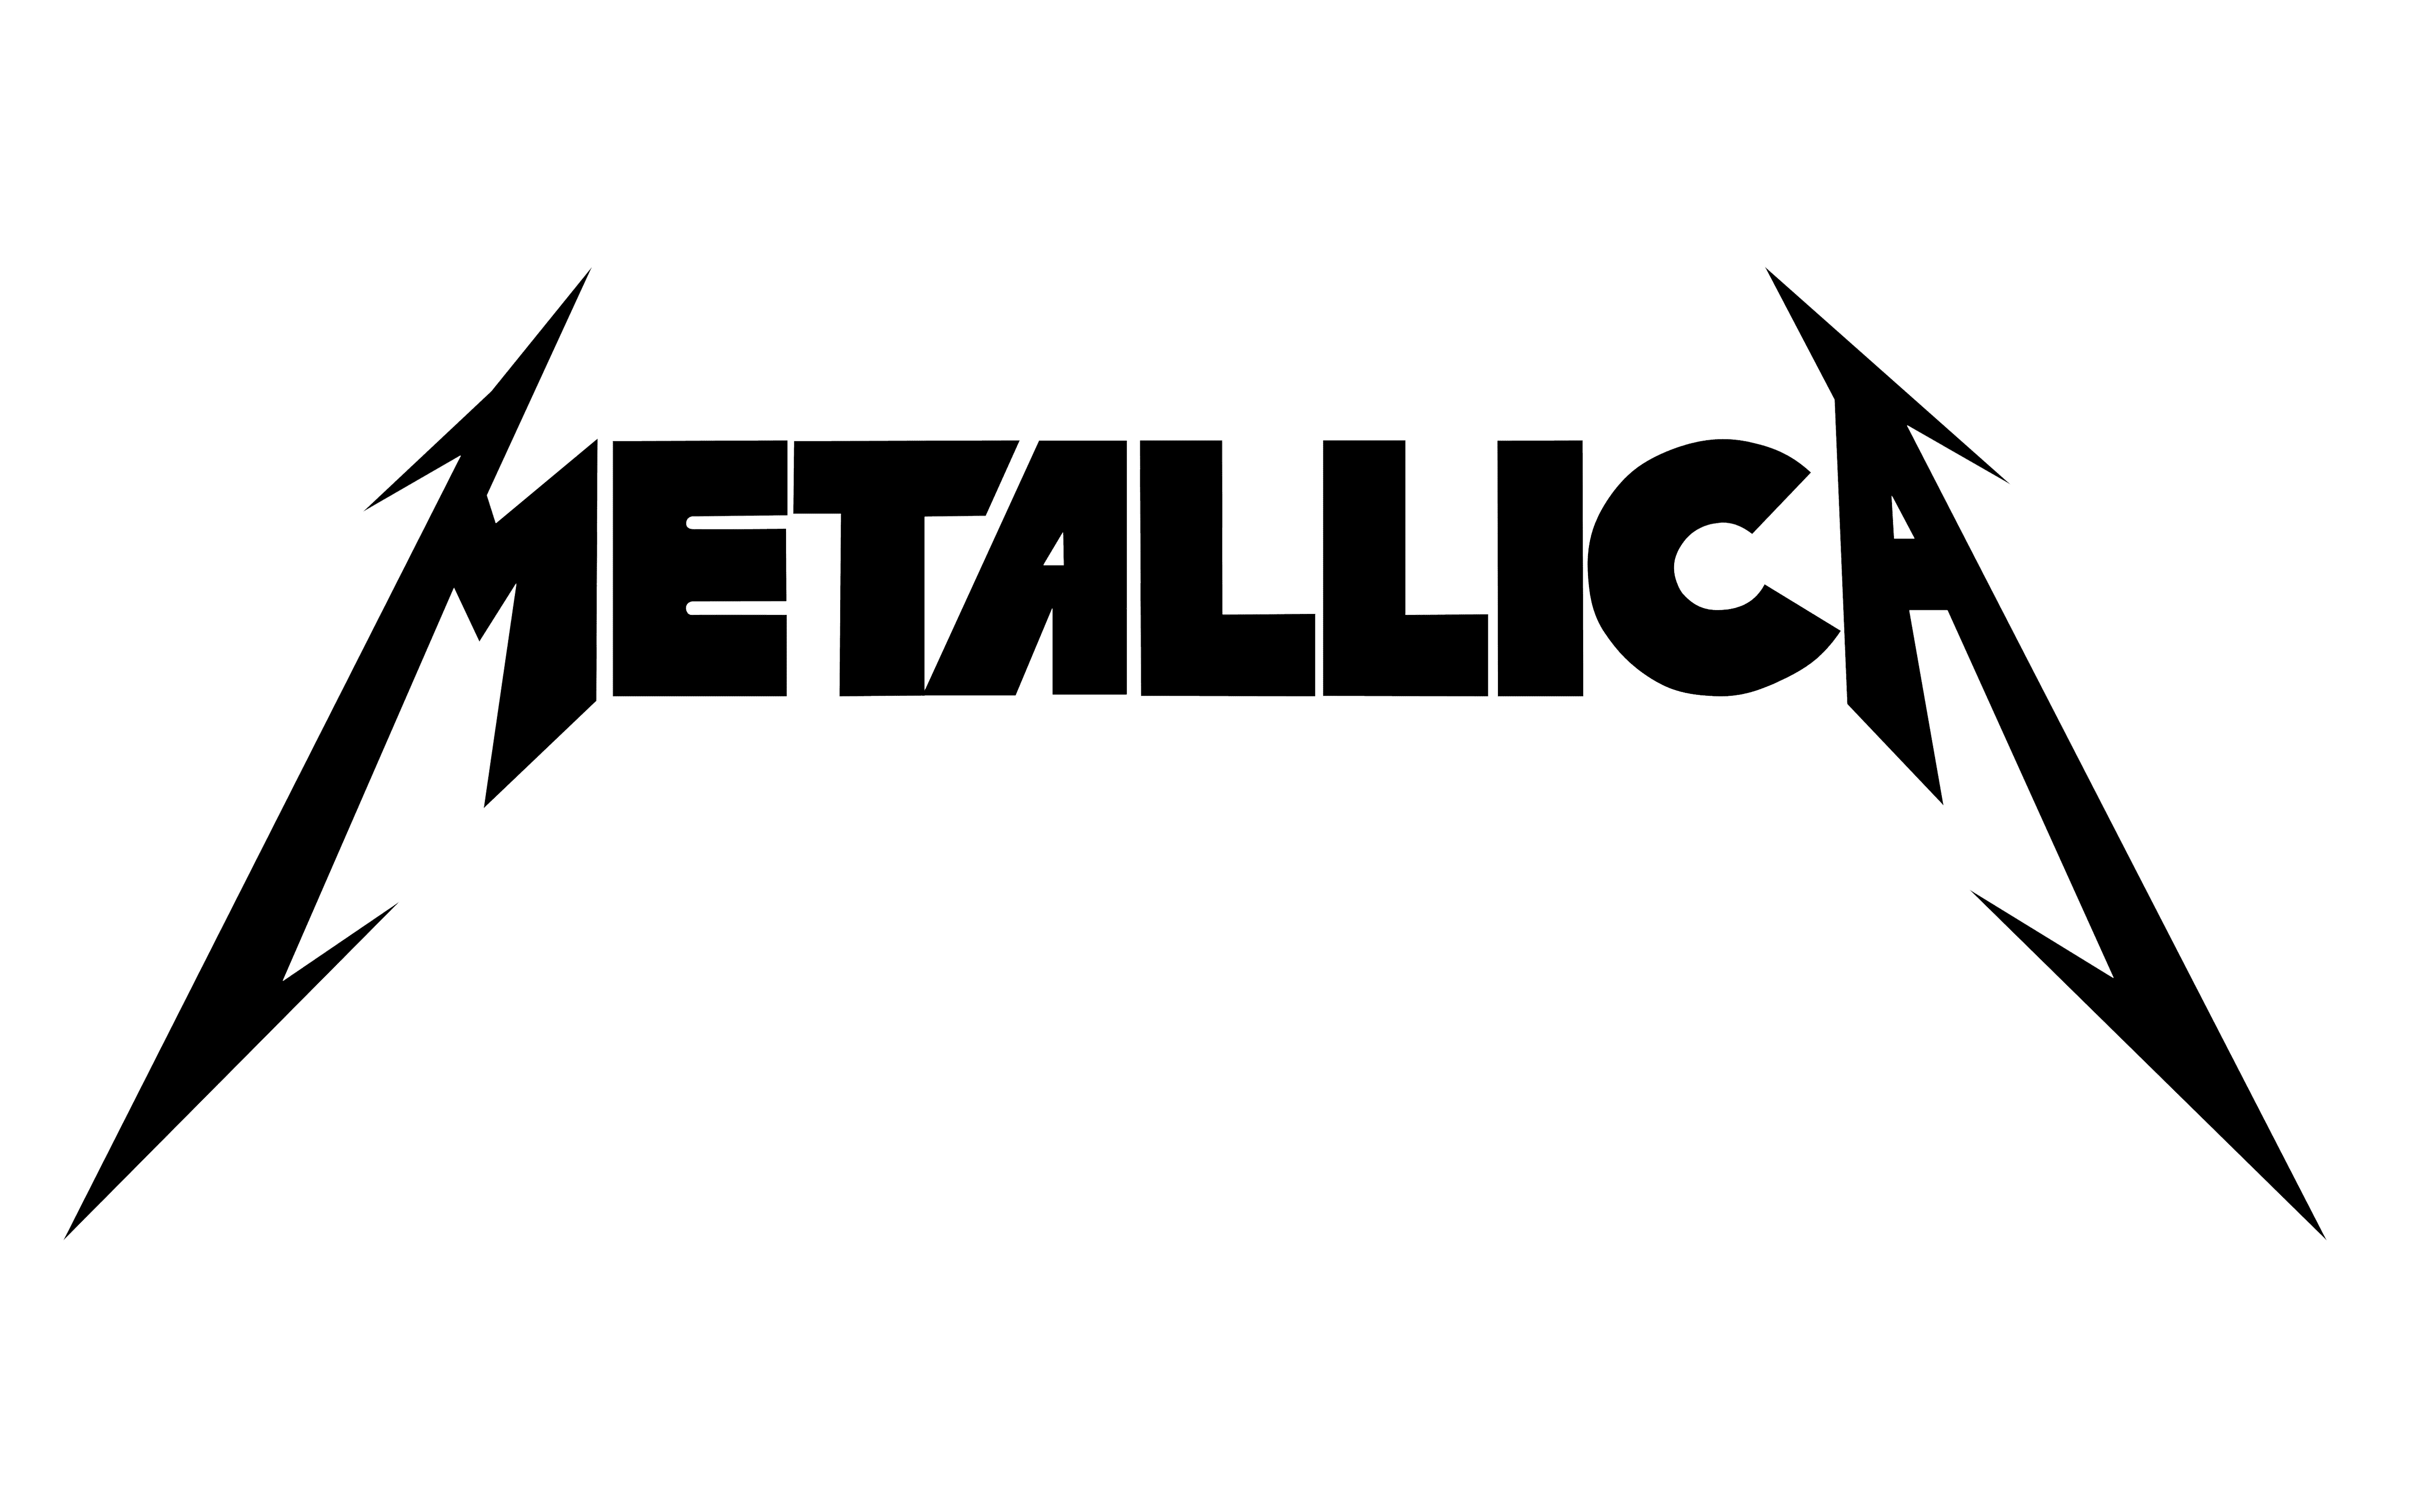 Metallica Logo Drawing - IMAGESEE